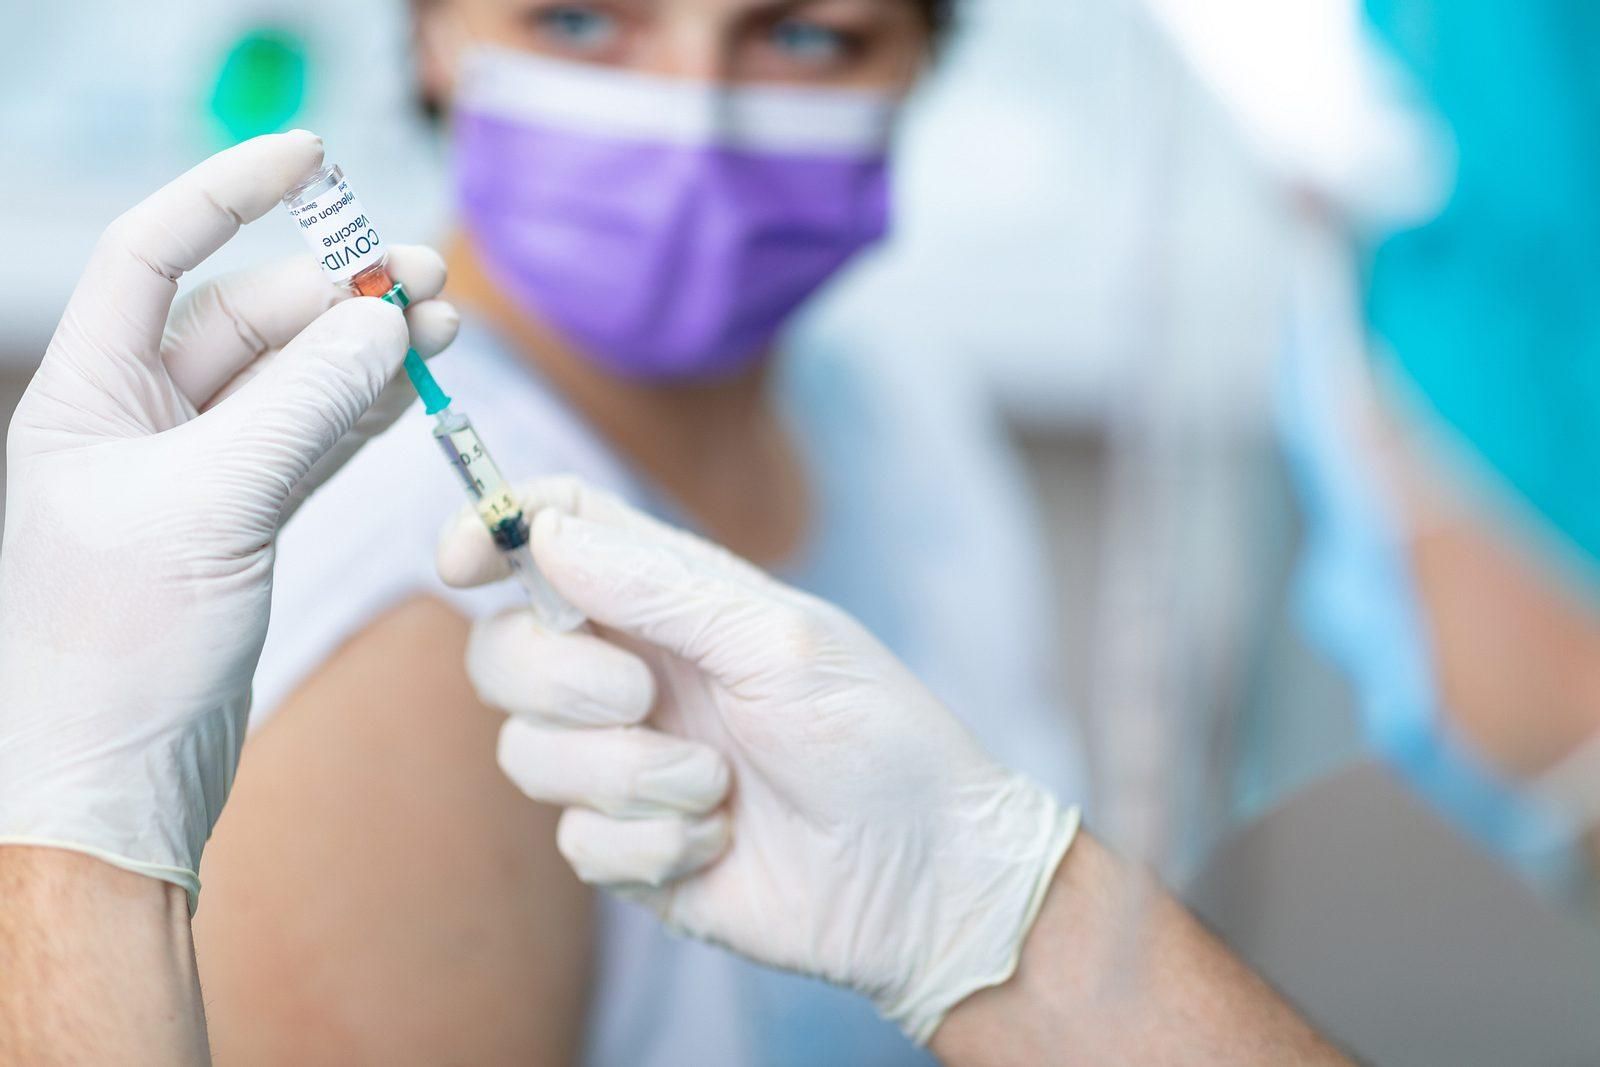 "Дуже ймовірно": у ЄС відреагували, на потрібність третьої дози вакцини
